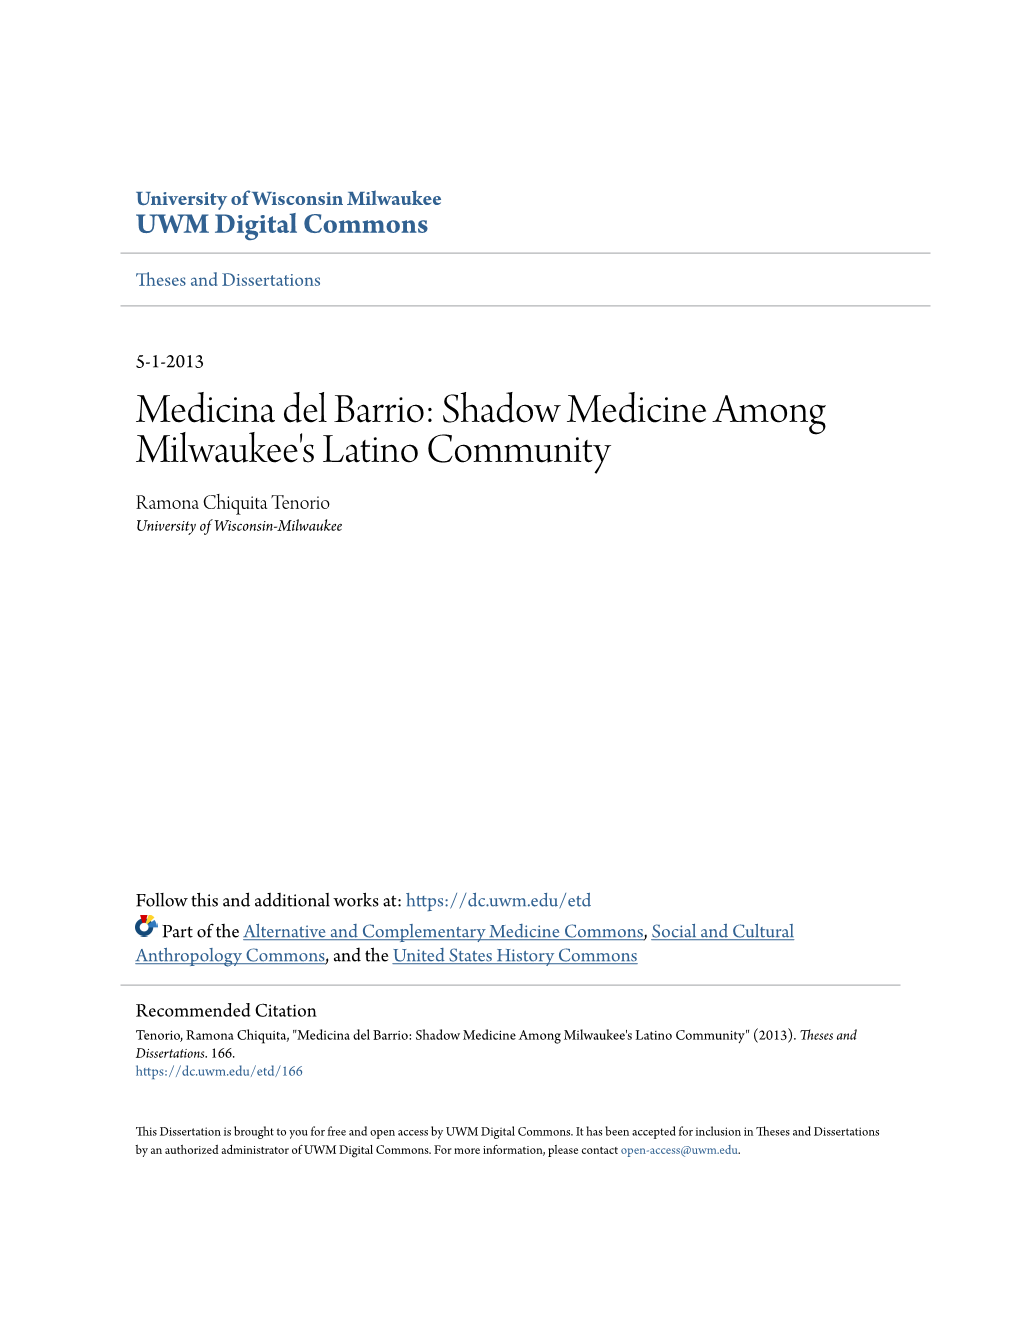 Shadow Medicine Among Milwaukee's Latino Community Ramona Chiquita Tenorio University of Wisconsin-Milwaukee